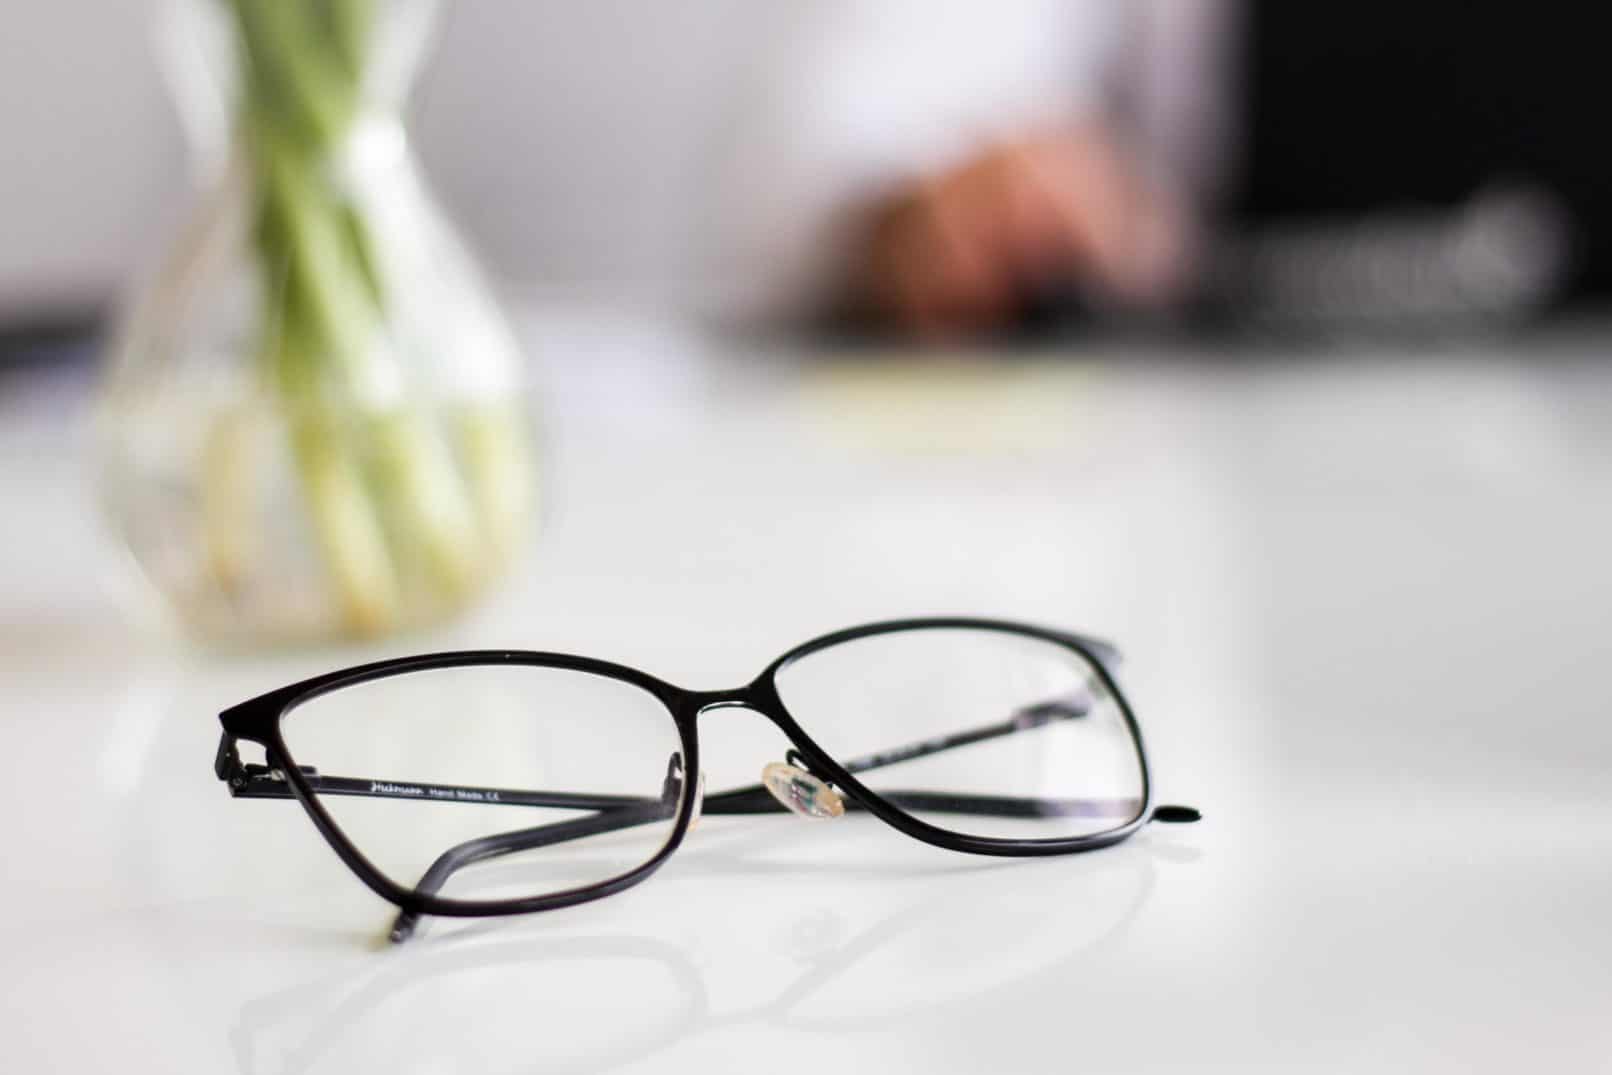 Stimmt es, dass das häufige Entfernen einer Brille Minusaugen heilen kann? Hören Sie, was der Arzt sagt